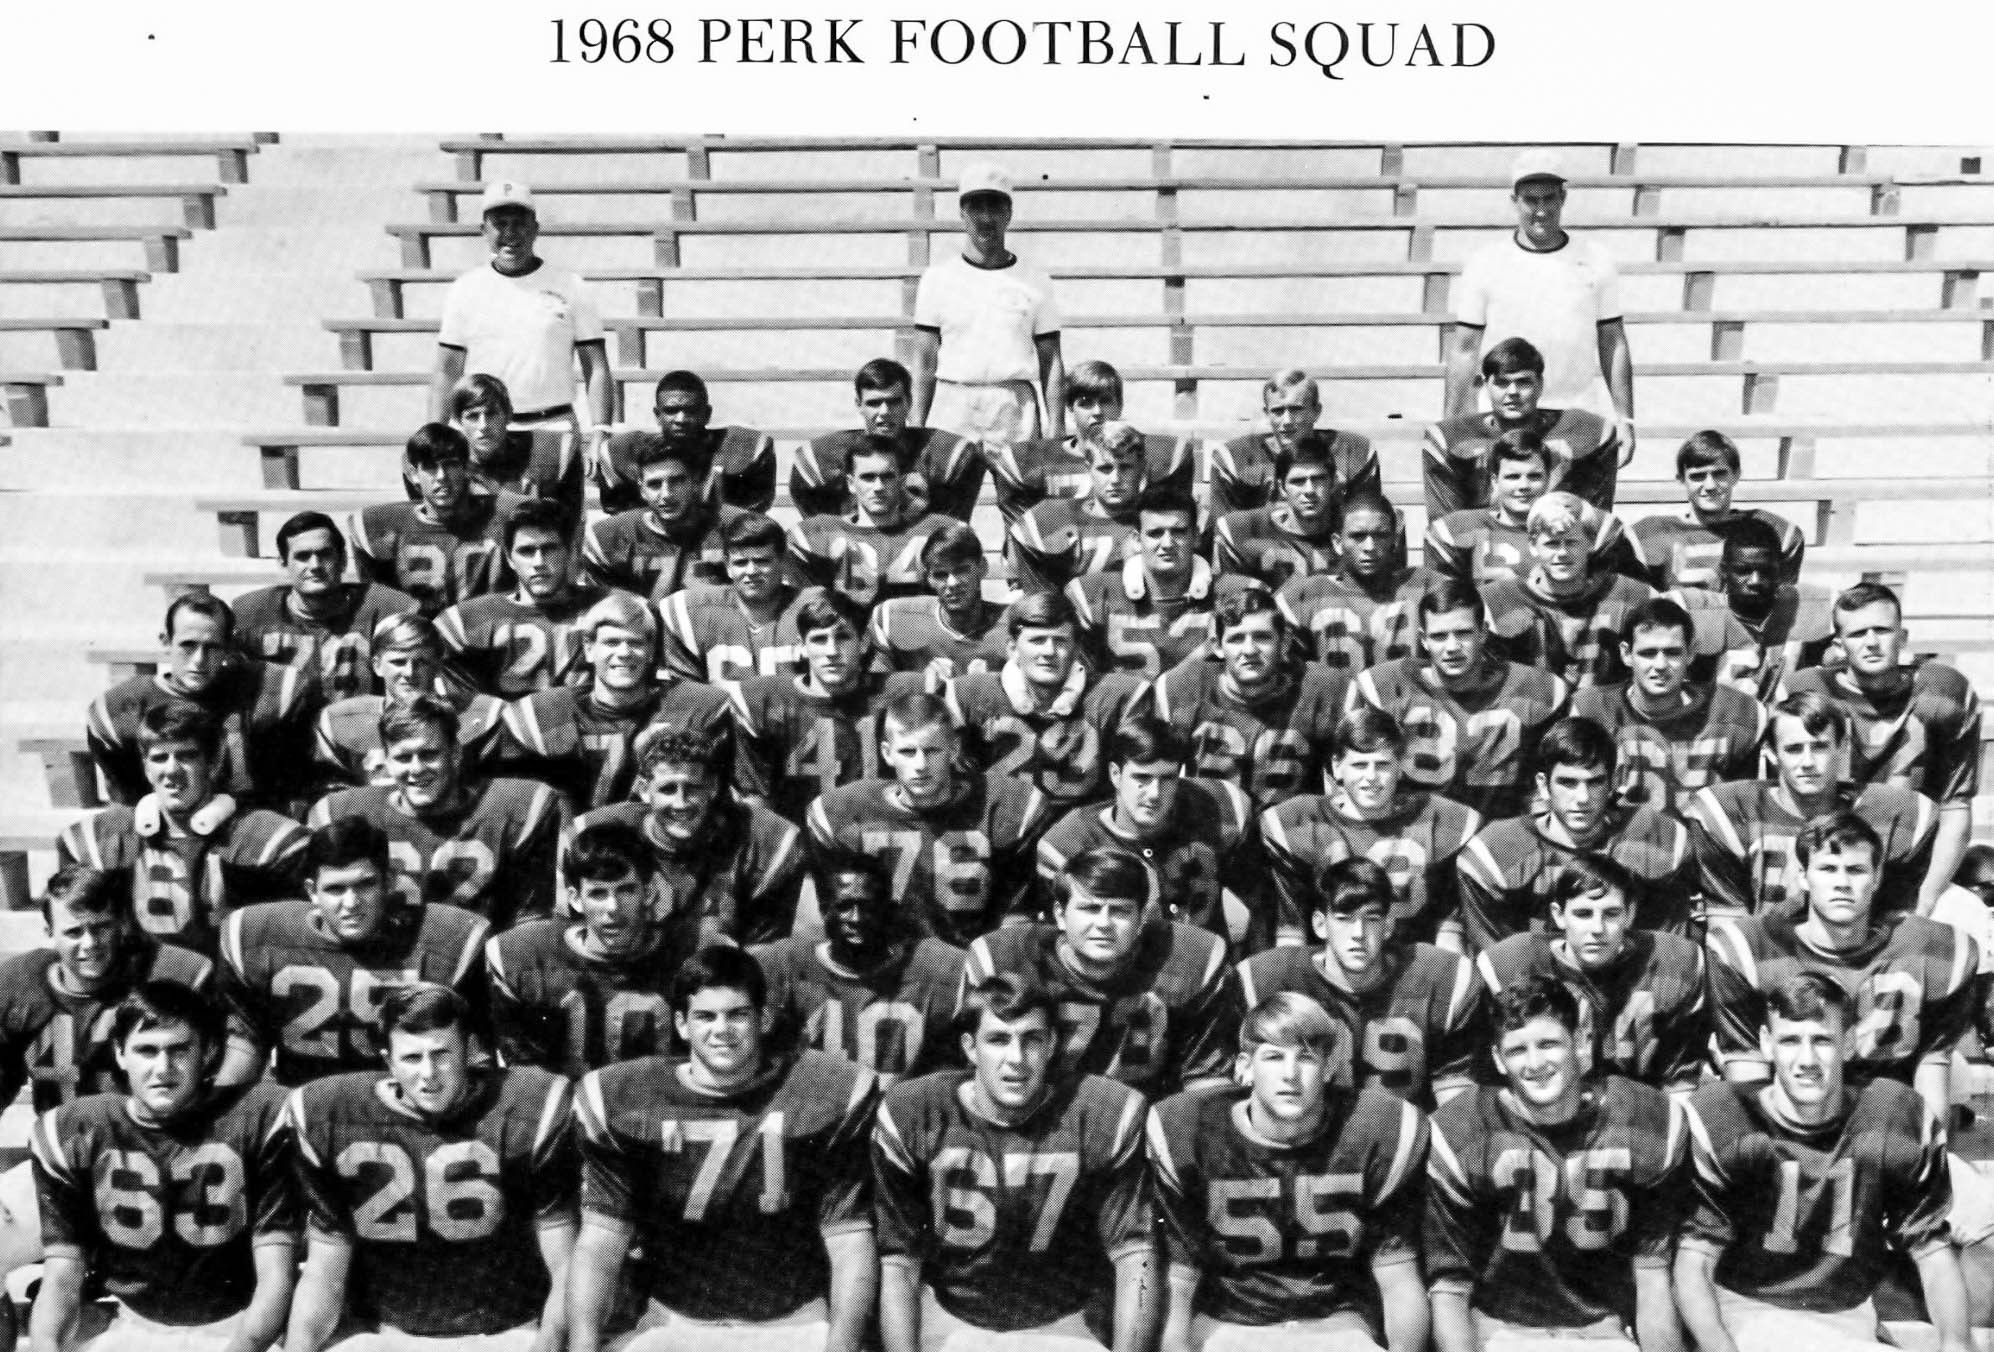 perkinston 1968 College football squad.jpg